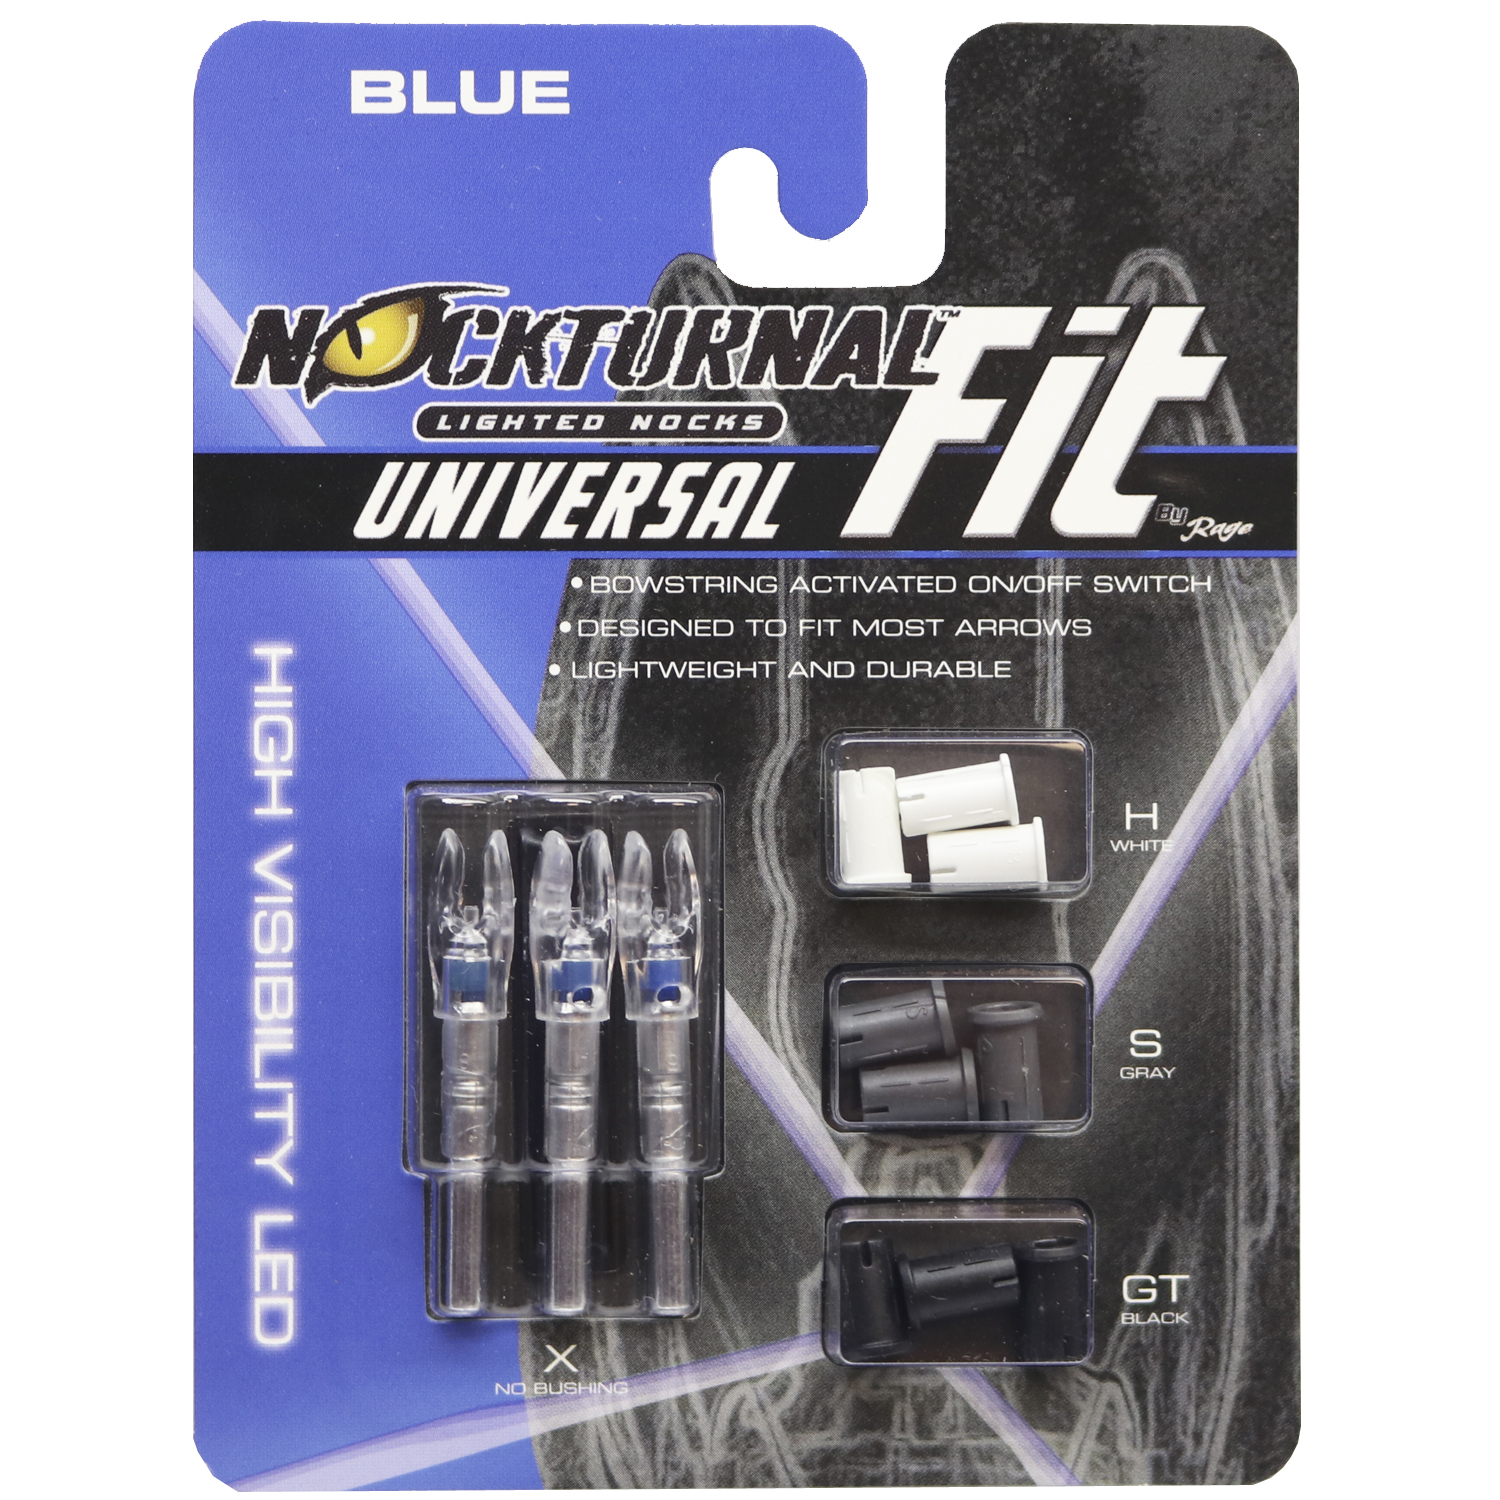 NT-314 Rage NockTurnal Universal Fit Lighted Nocks Blue 3 pack.